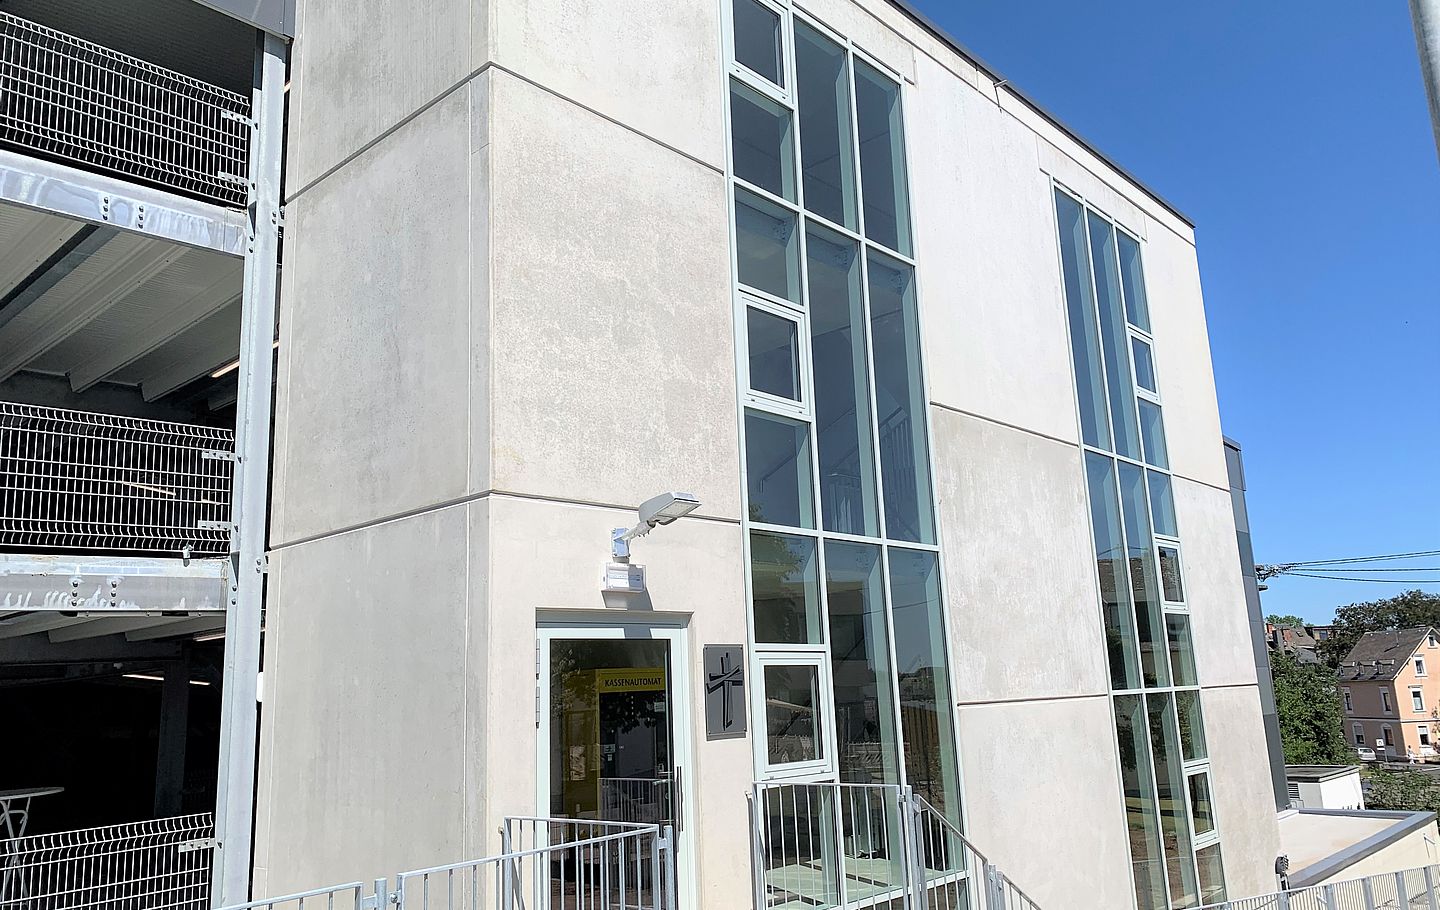 Neues Parkhaus Katholisches Klinikum Koblenz-Montabaur gebaut von Schreiber Stahlbau - großzuegiges Treppenhaus